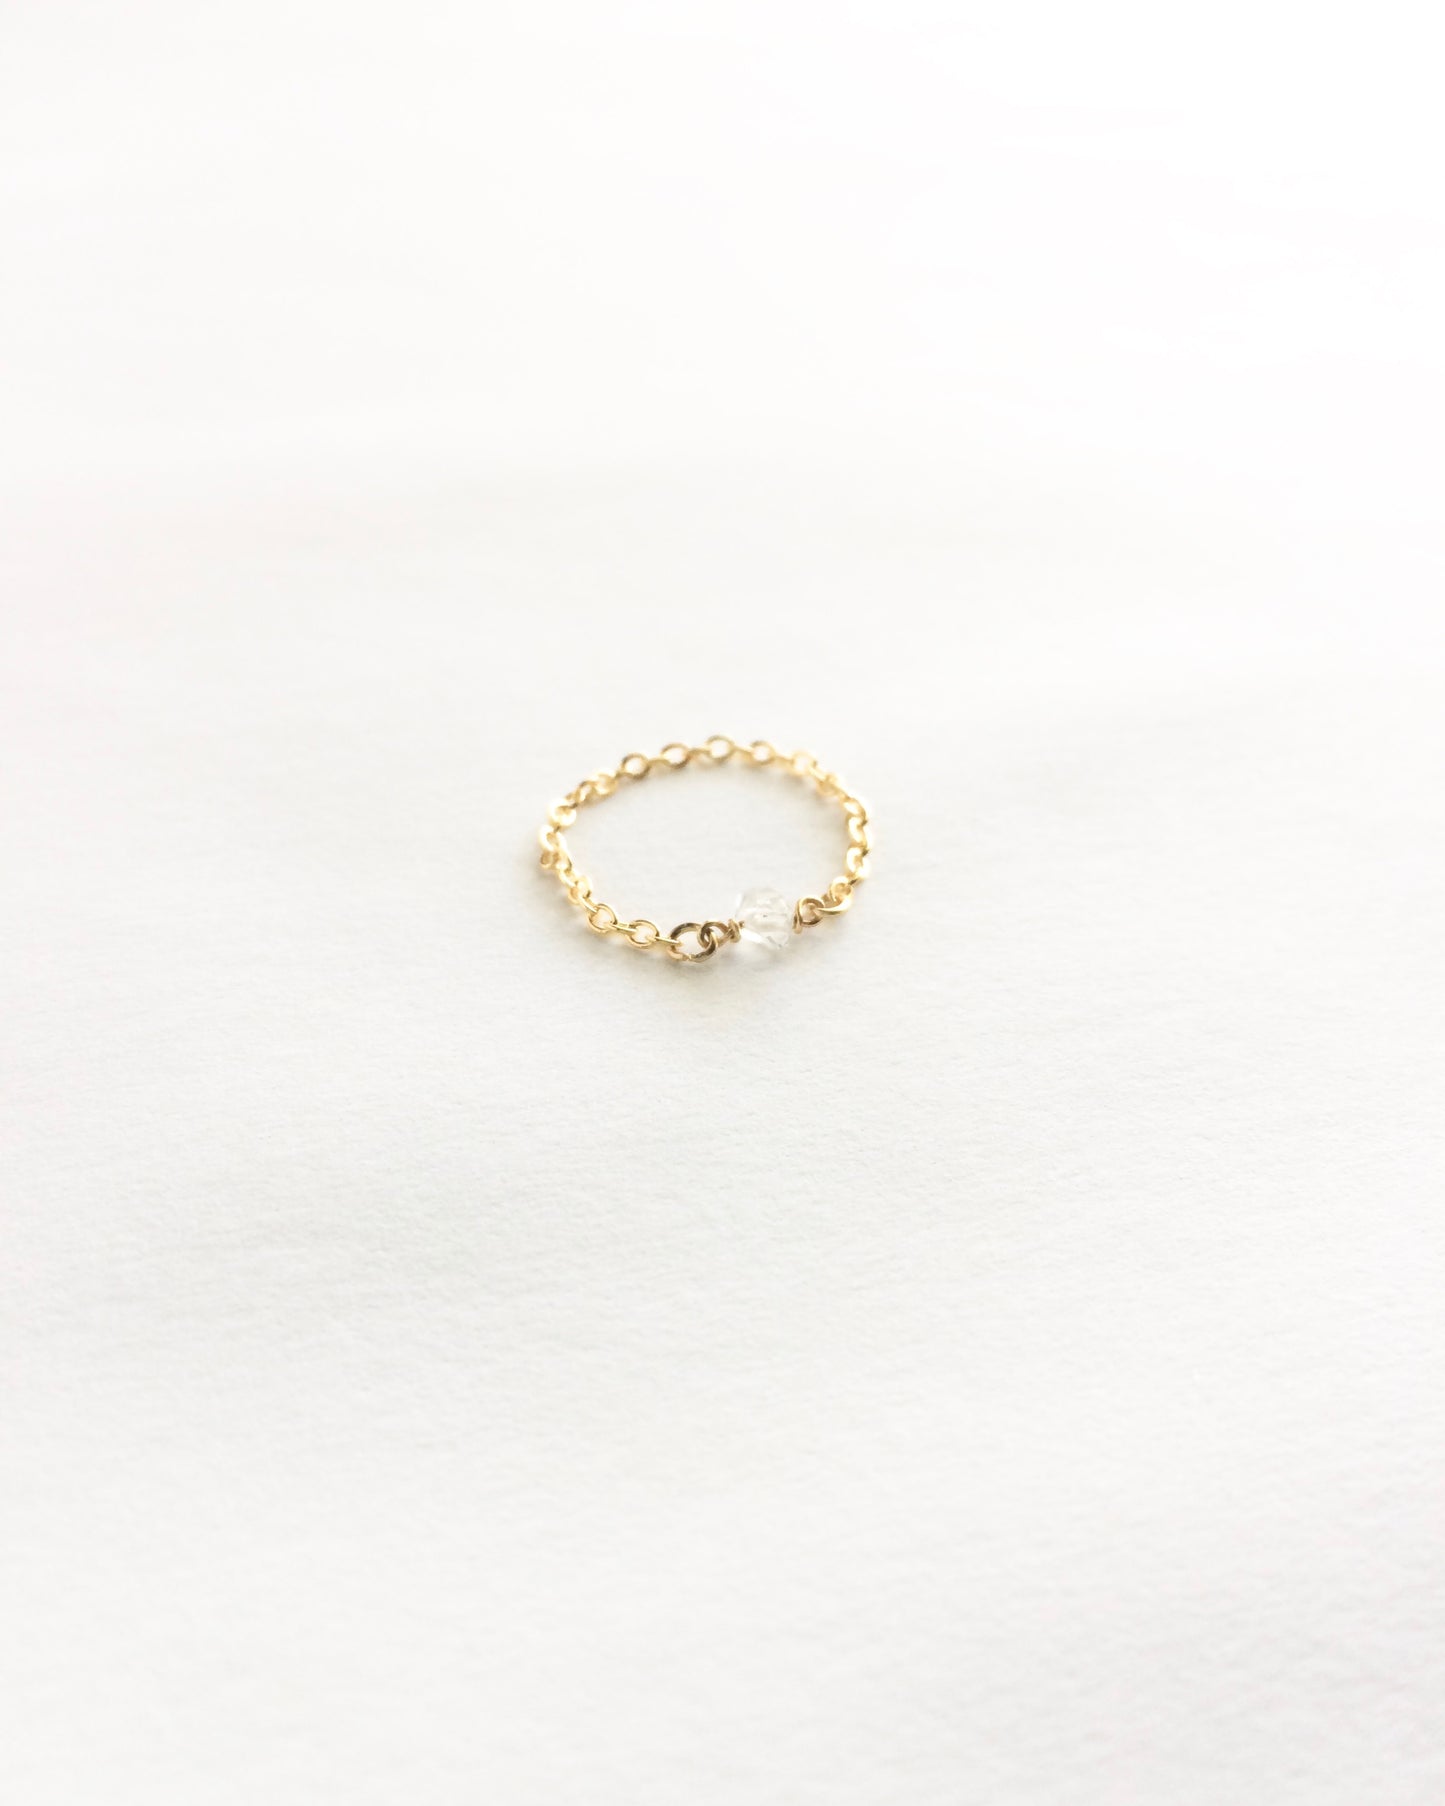 Herkimer Diamond Ring | Thin Delicate Chain Ring | IB Jewelry